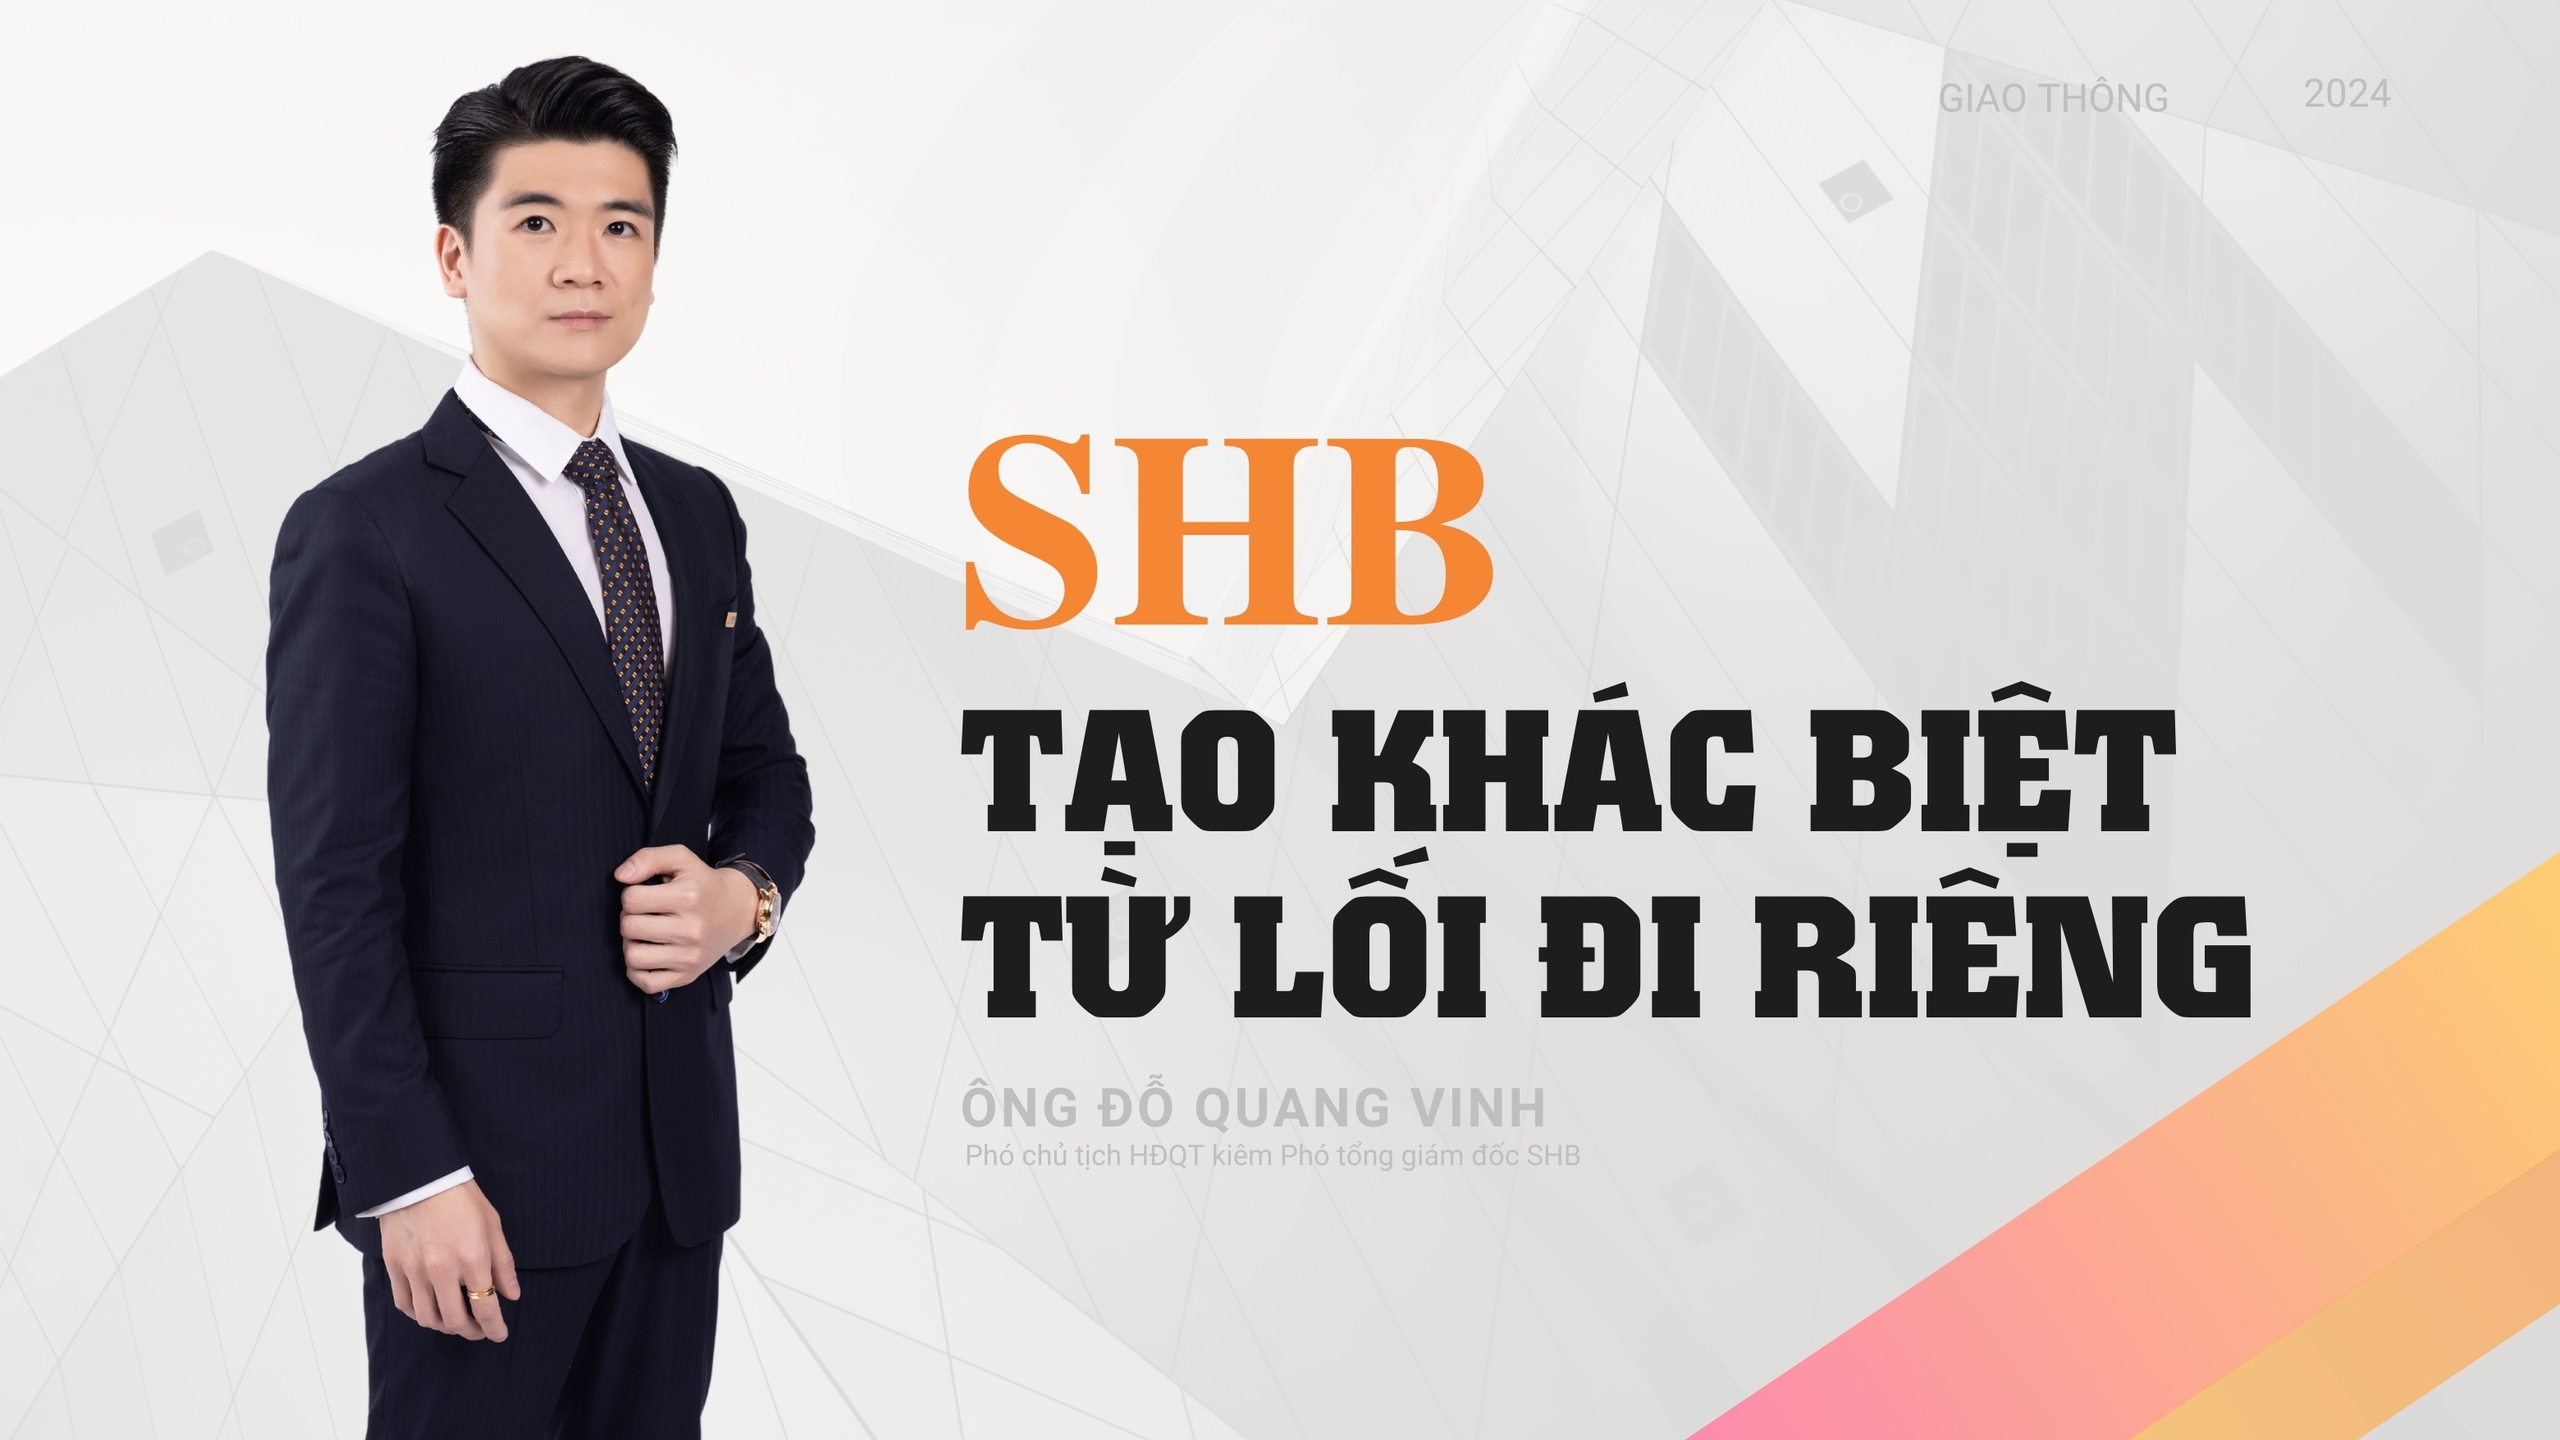 Phó chủ tịch Đỗ Quang Vinh: SHB tạo sự khác biệt từ lối đi riêng- Ảnh 5.